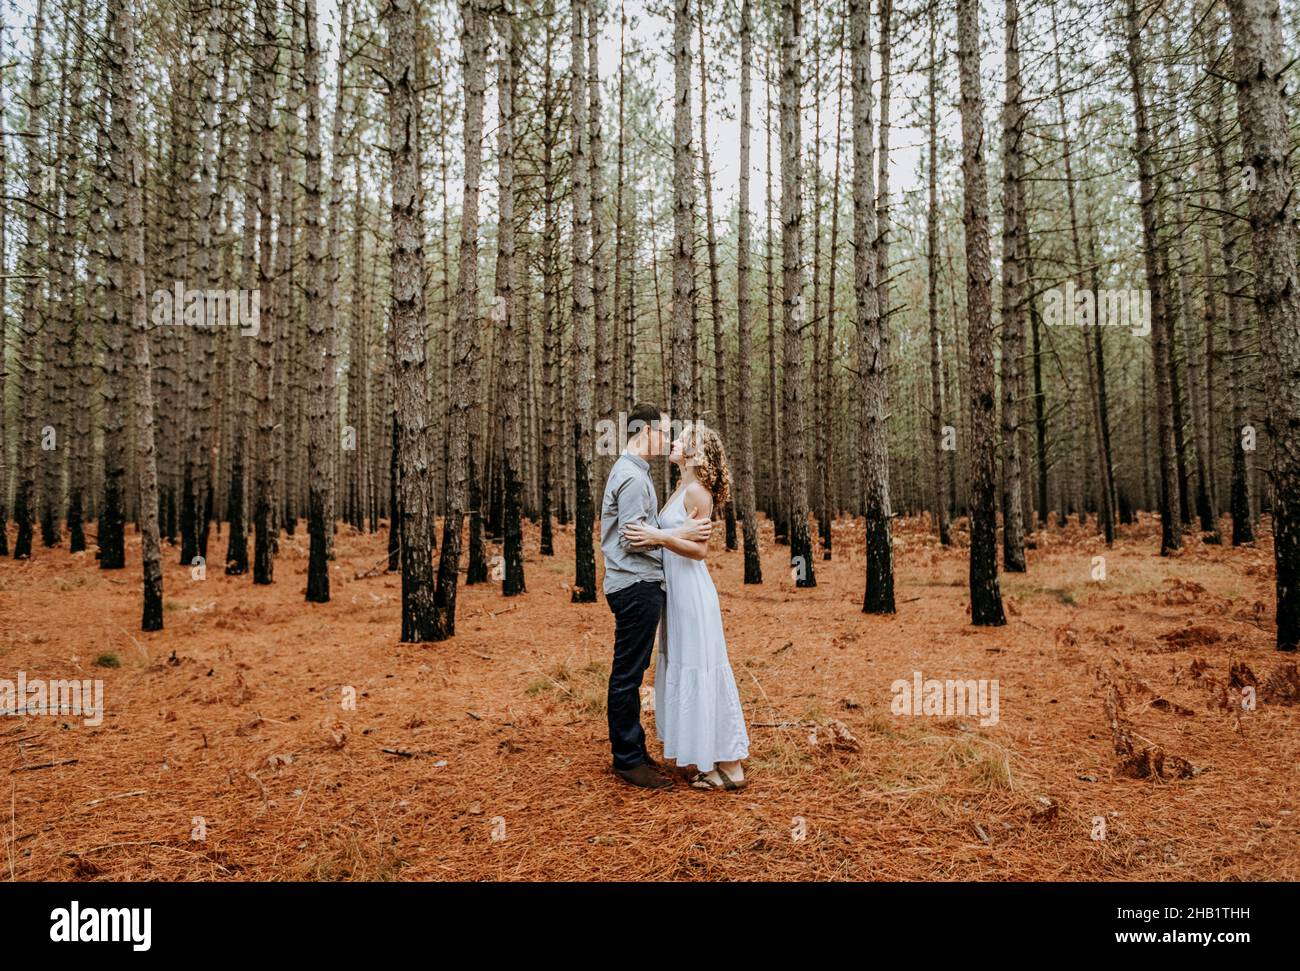 le couple tient des hugs intimes les uns avec les autres dans les forêts de pins Banque D'Images